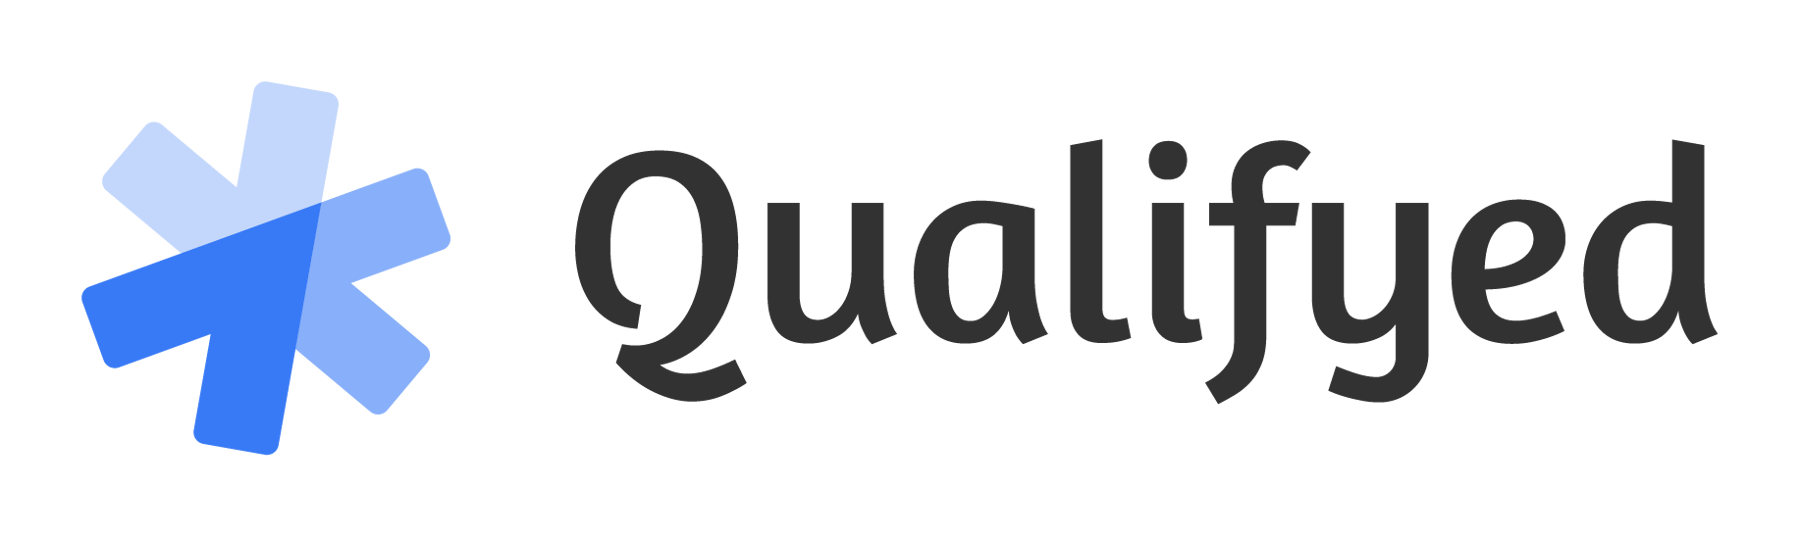 qualifyed-logos_full-on-light